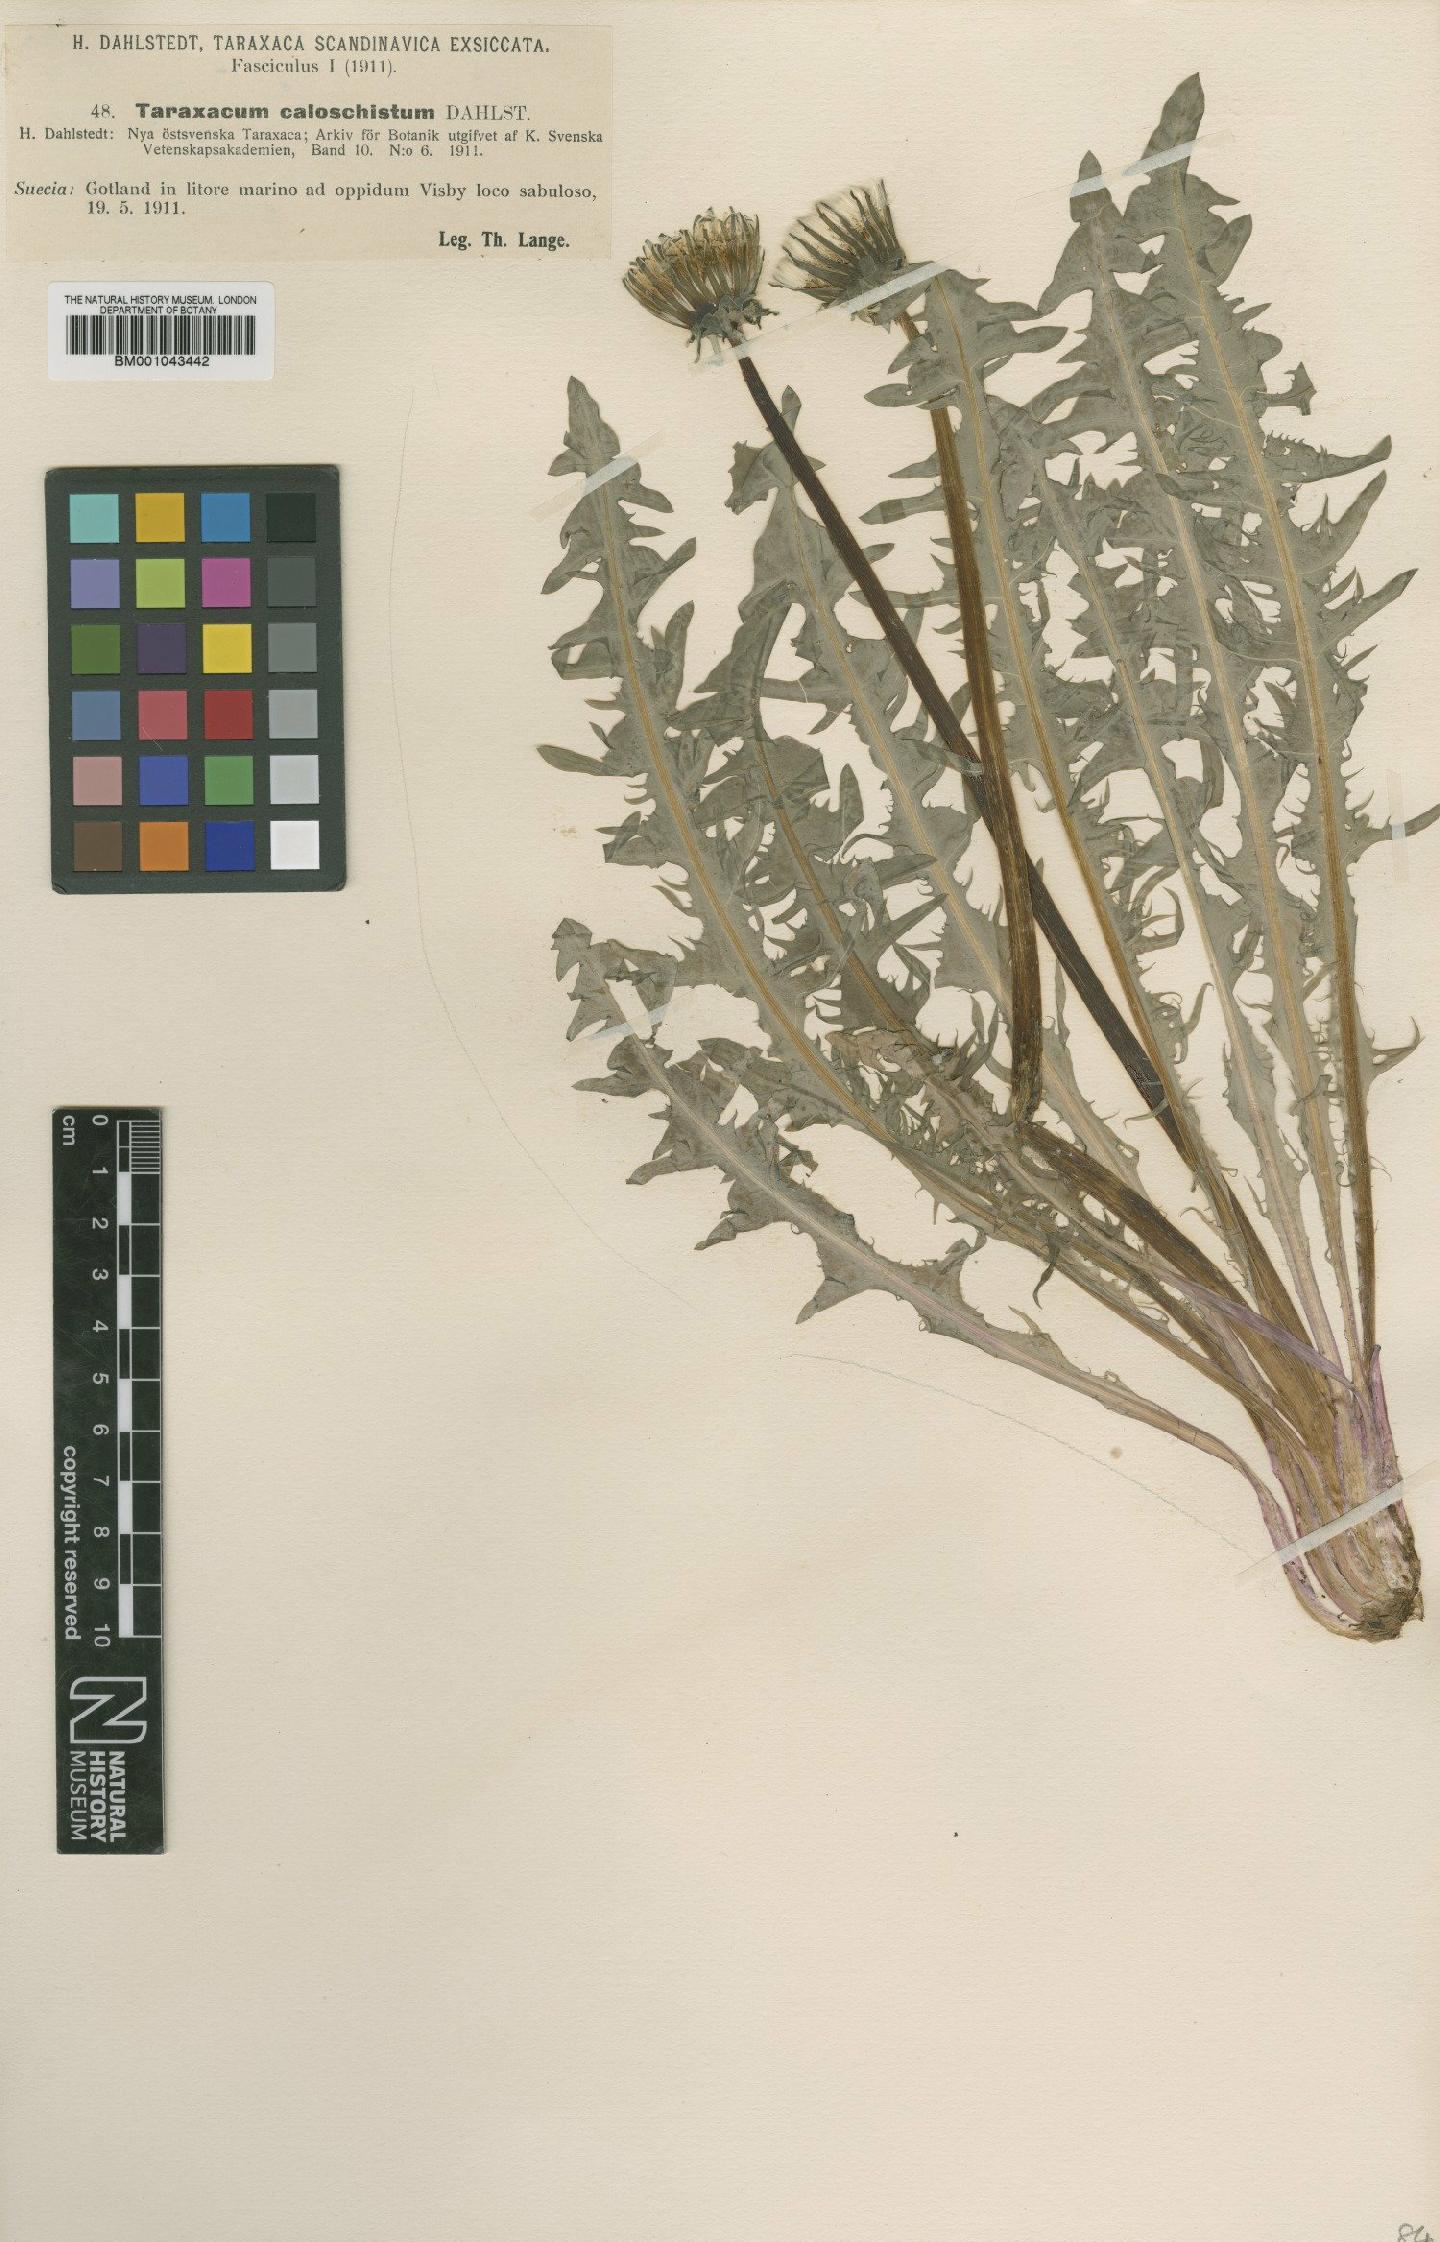 To NHMUK collection (Taraxacum caloschistum Dahlst; Type; NHMUK:ecatalogue:1998165)